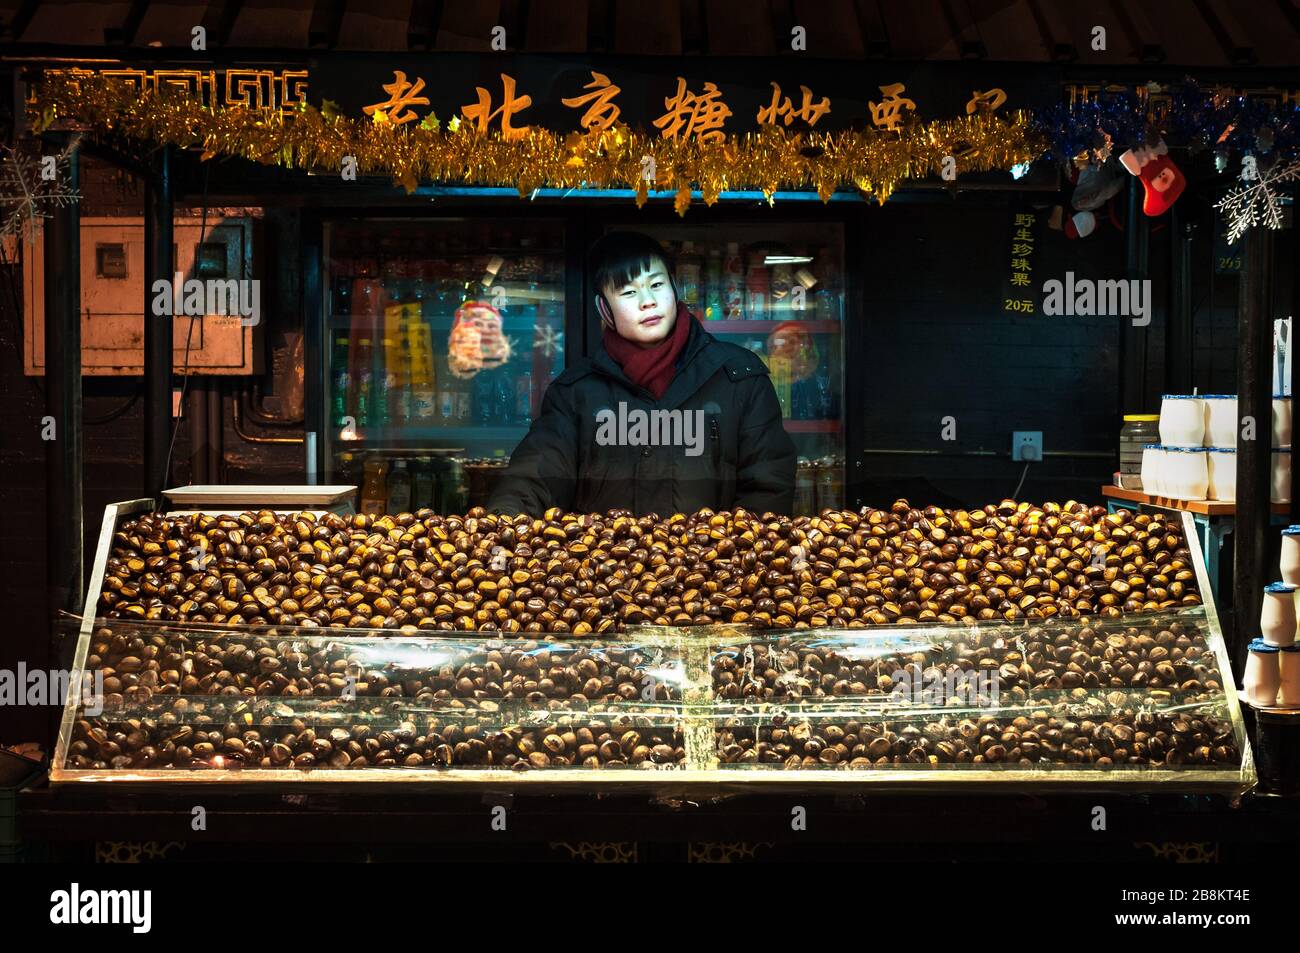 WANGFUJING NIGHT MARKET, BEIJING - DEC 25, 2013 - Young chestnut seller at Wangfujing snack street, Beijing Stock Photo